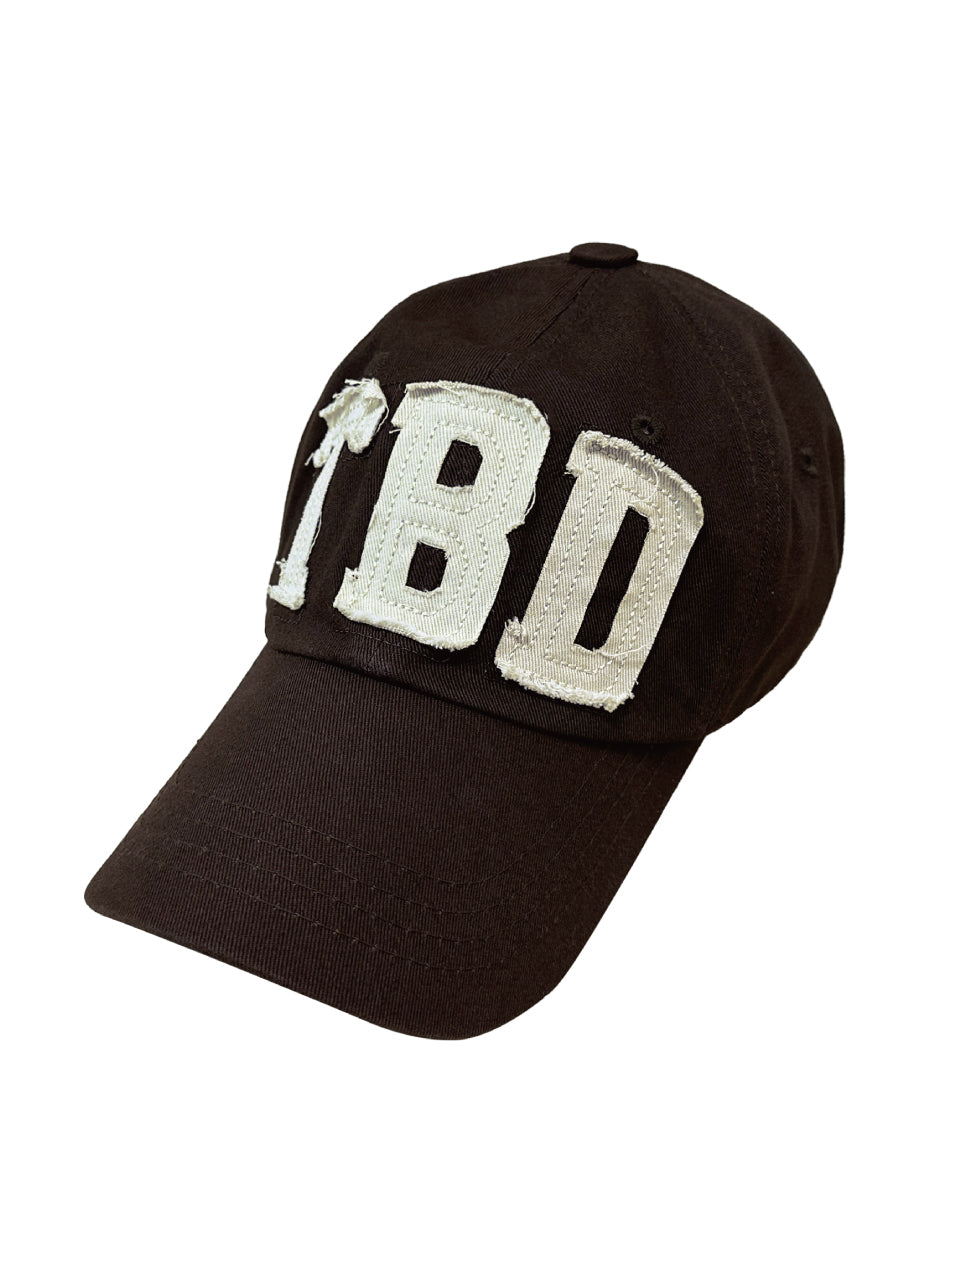 TBD logo cap Brown